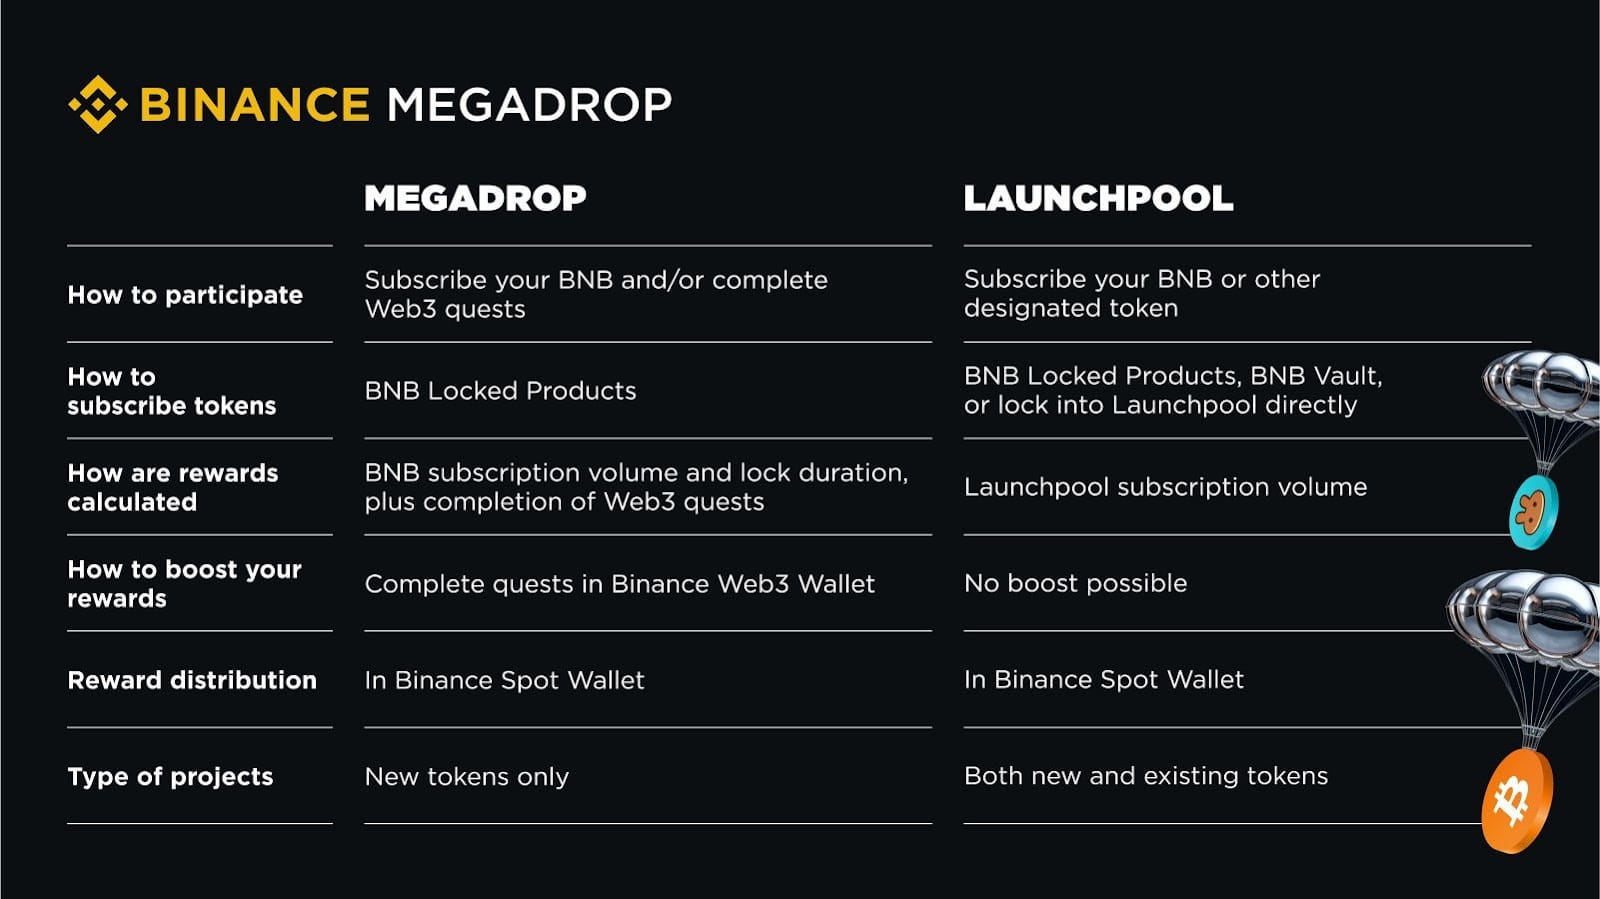 Quelle différence entre Megadrop et le Launchpool de Binance ?